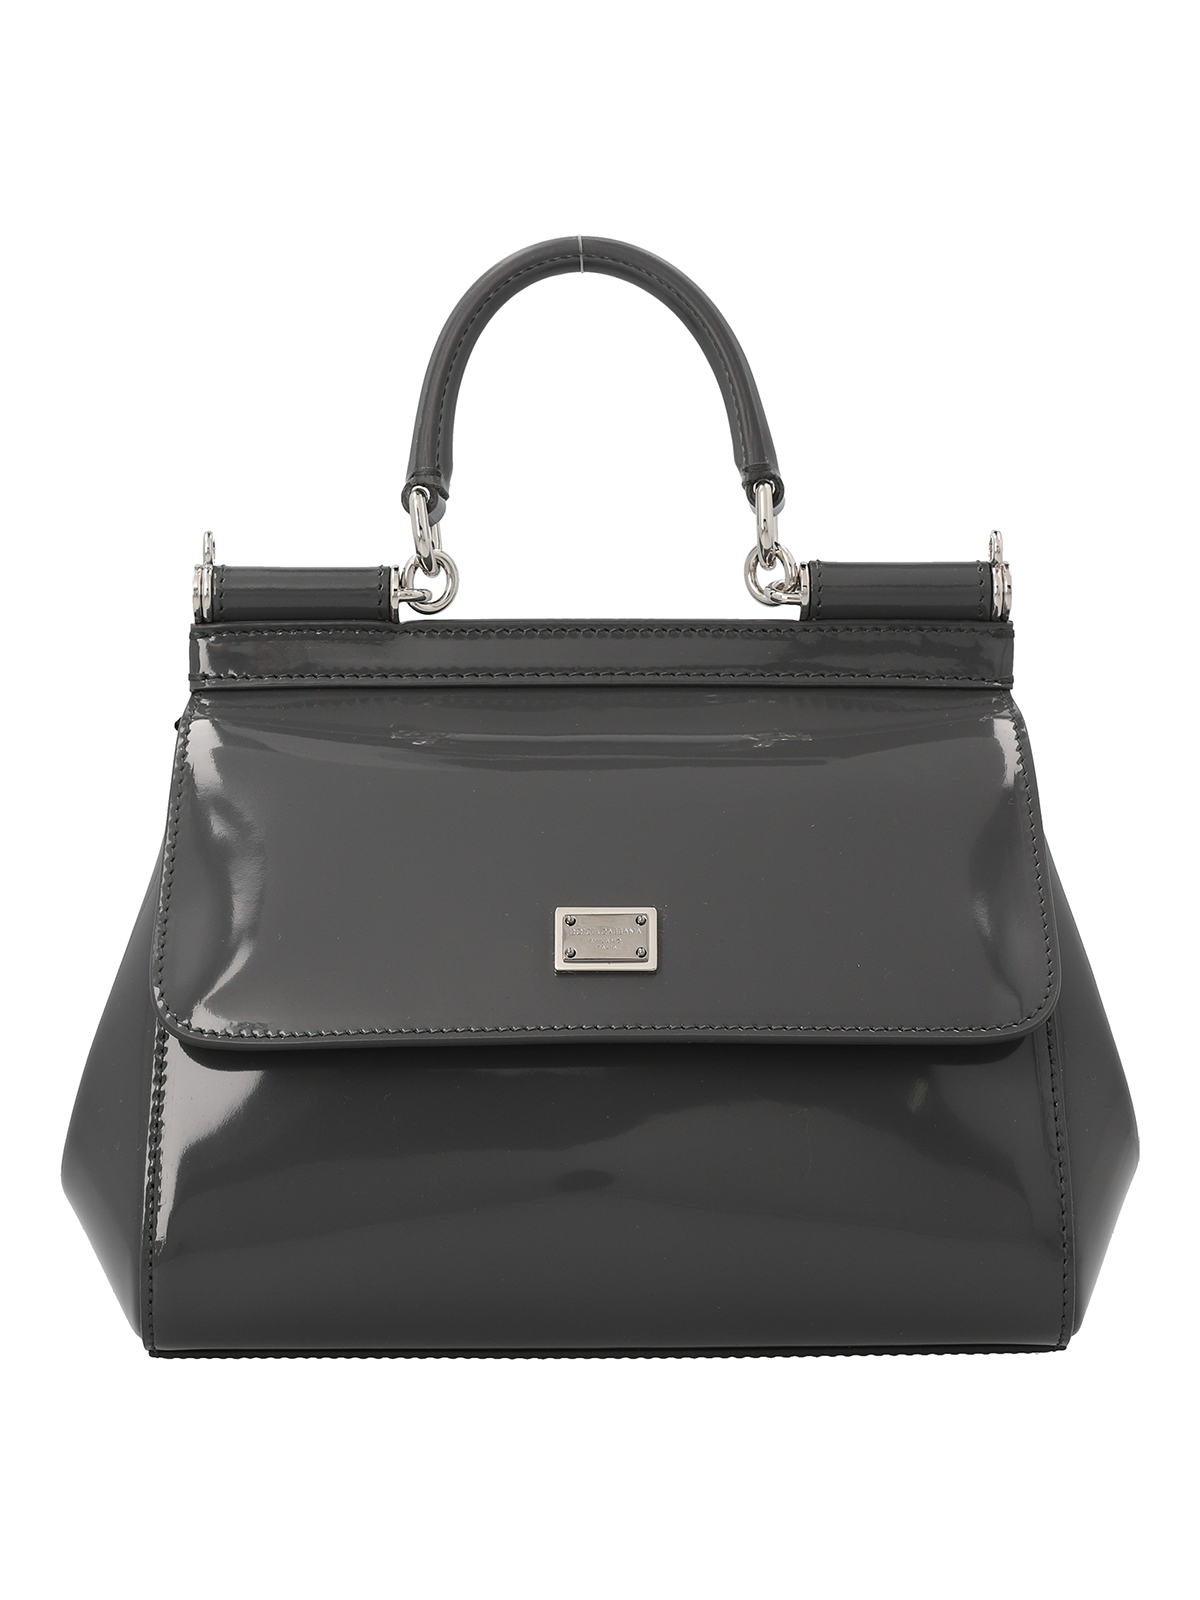 Dolce & Gabbana Logo Leather Handbag In Grey